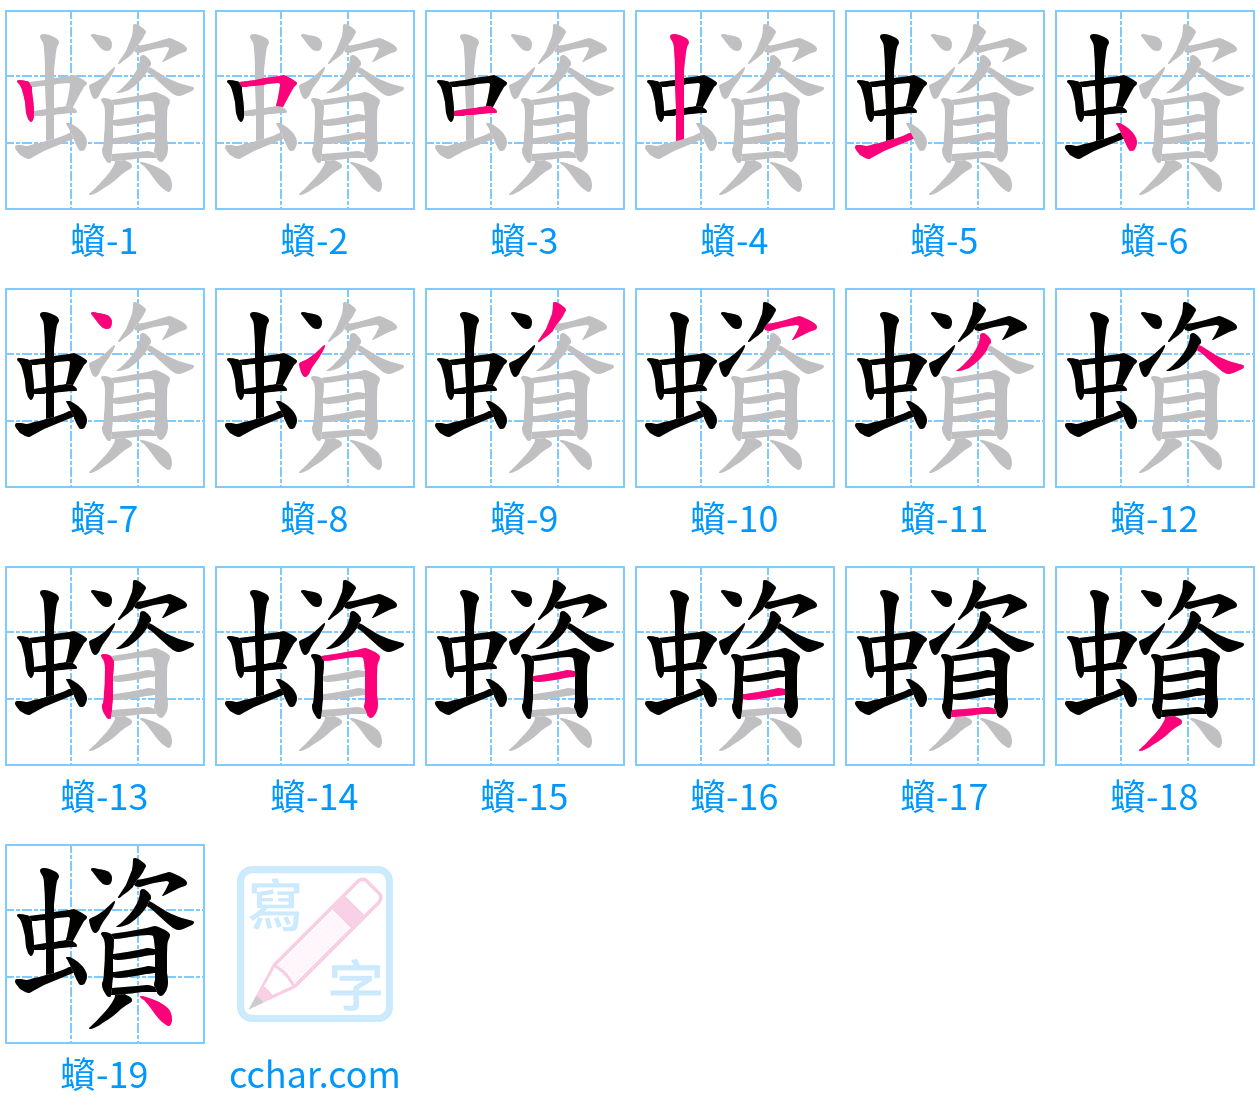 蠀 stroke order step-by-step diagram